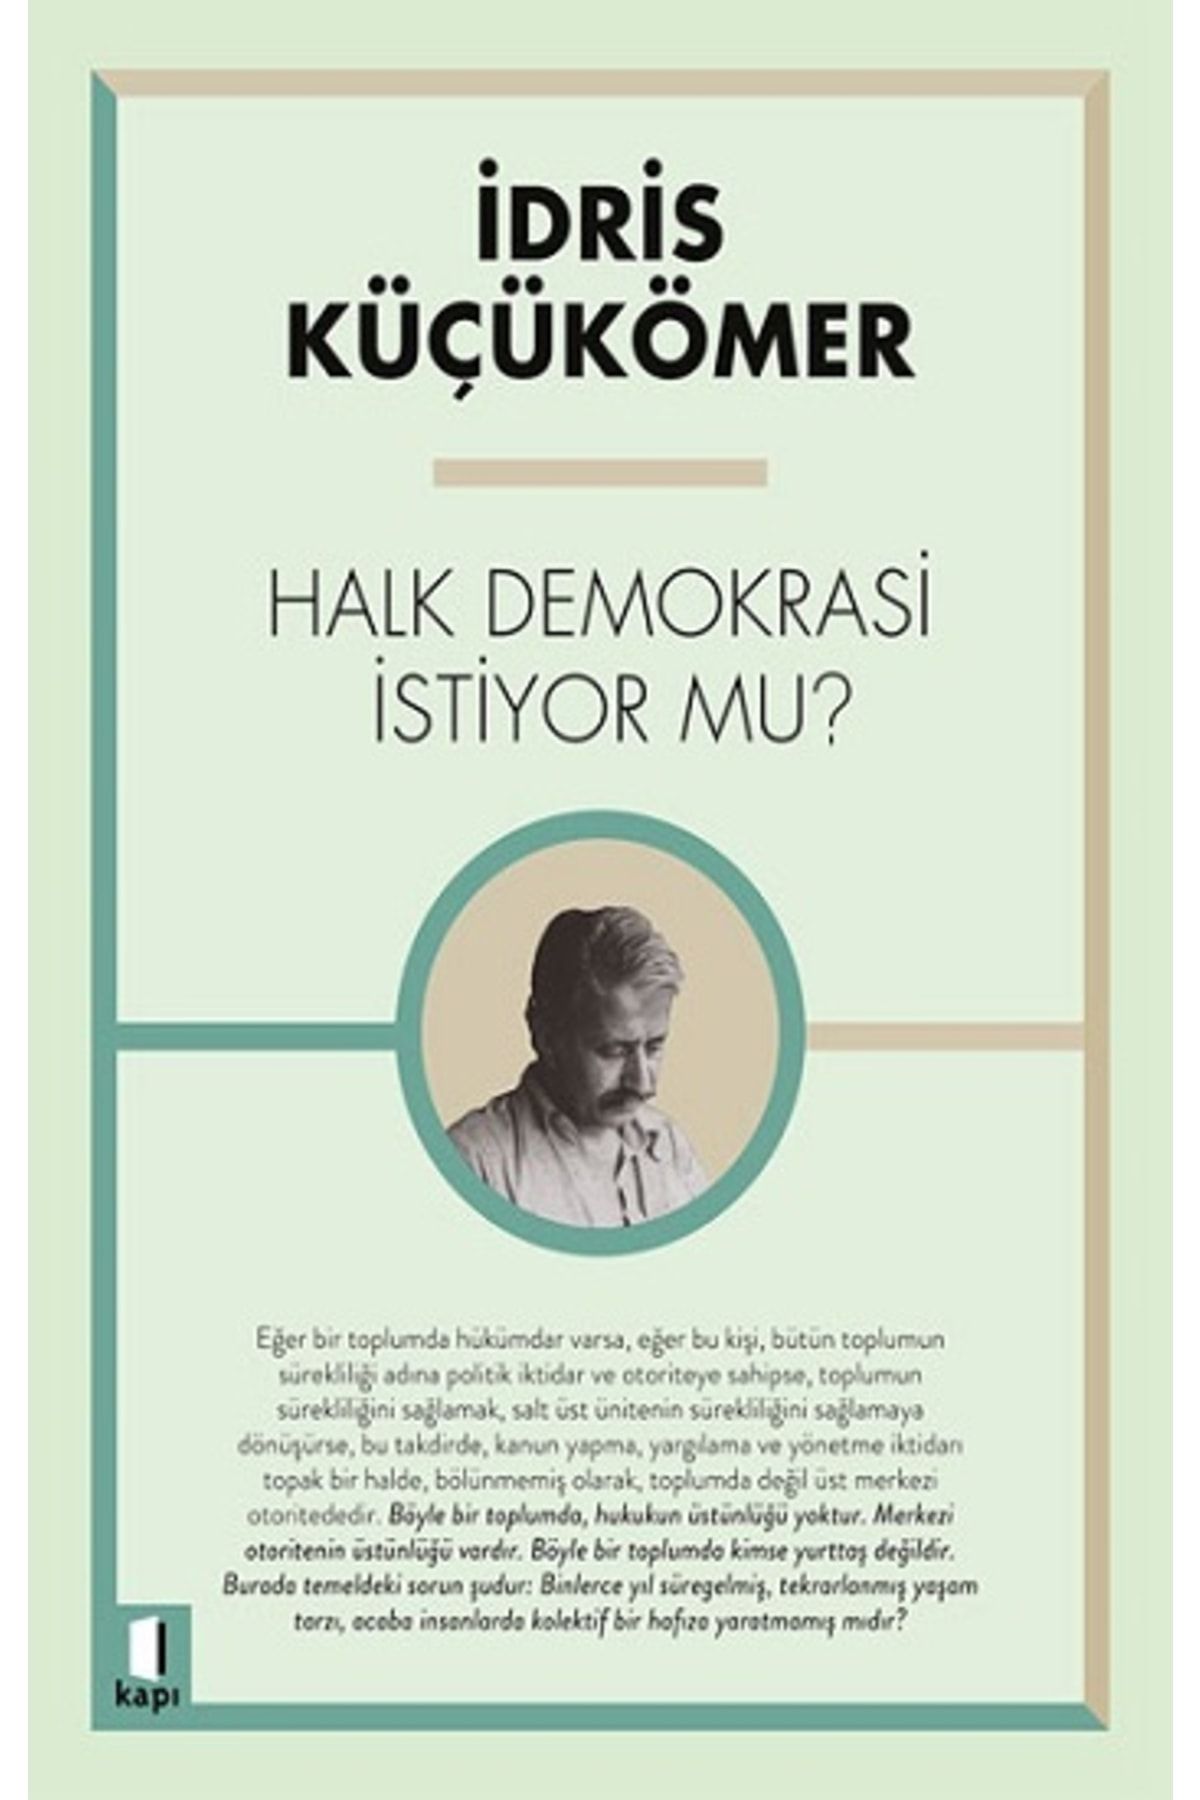 Kapı Yayınları Halk Demokrasi Istiyor Mu? - - Idris Küçükömer Kitabı